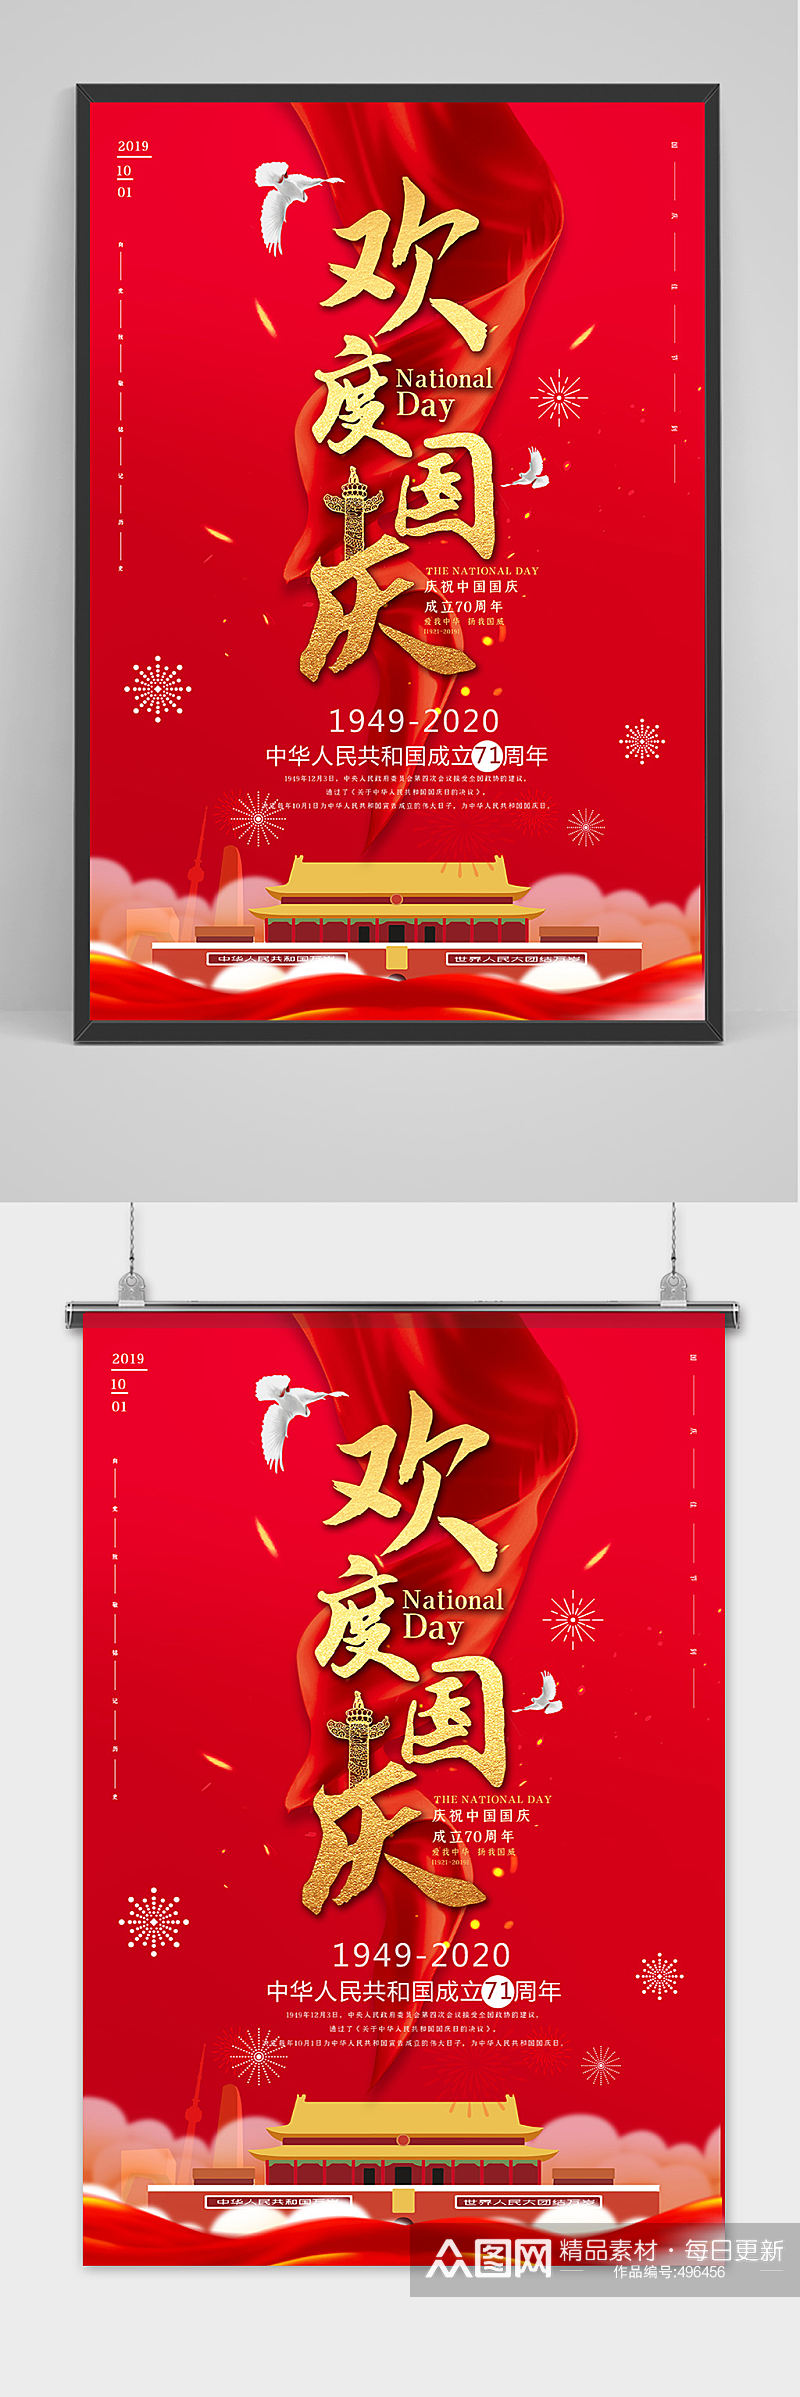 大红欢度国庆海报下载素材